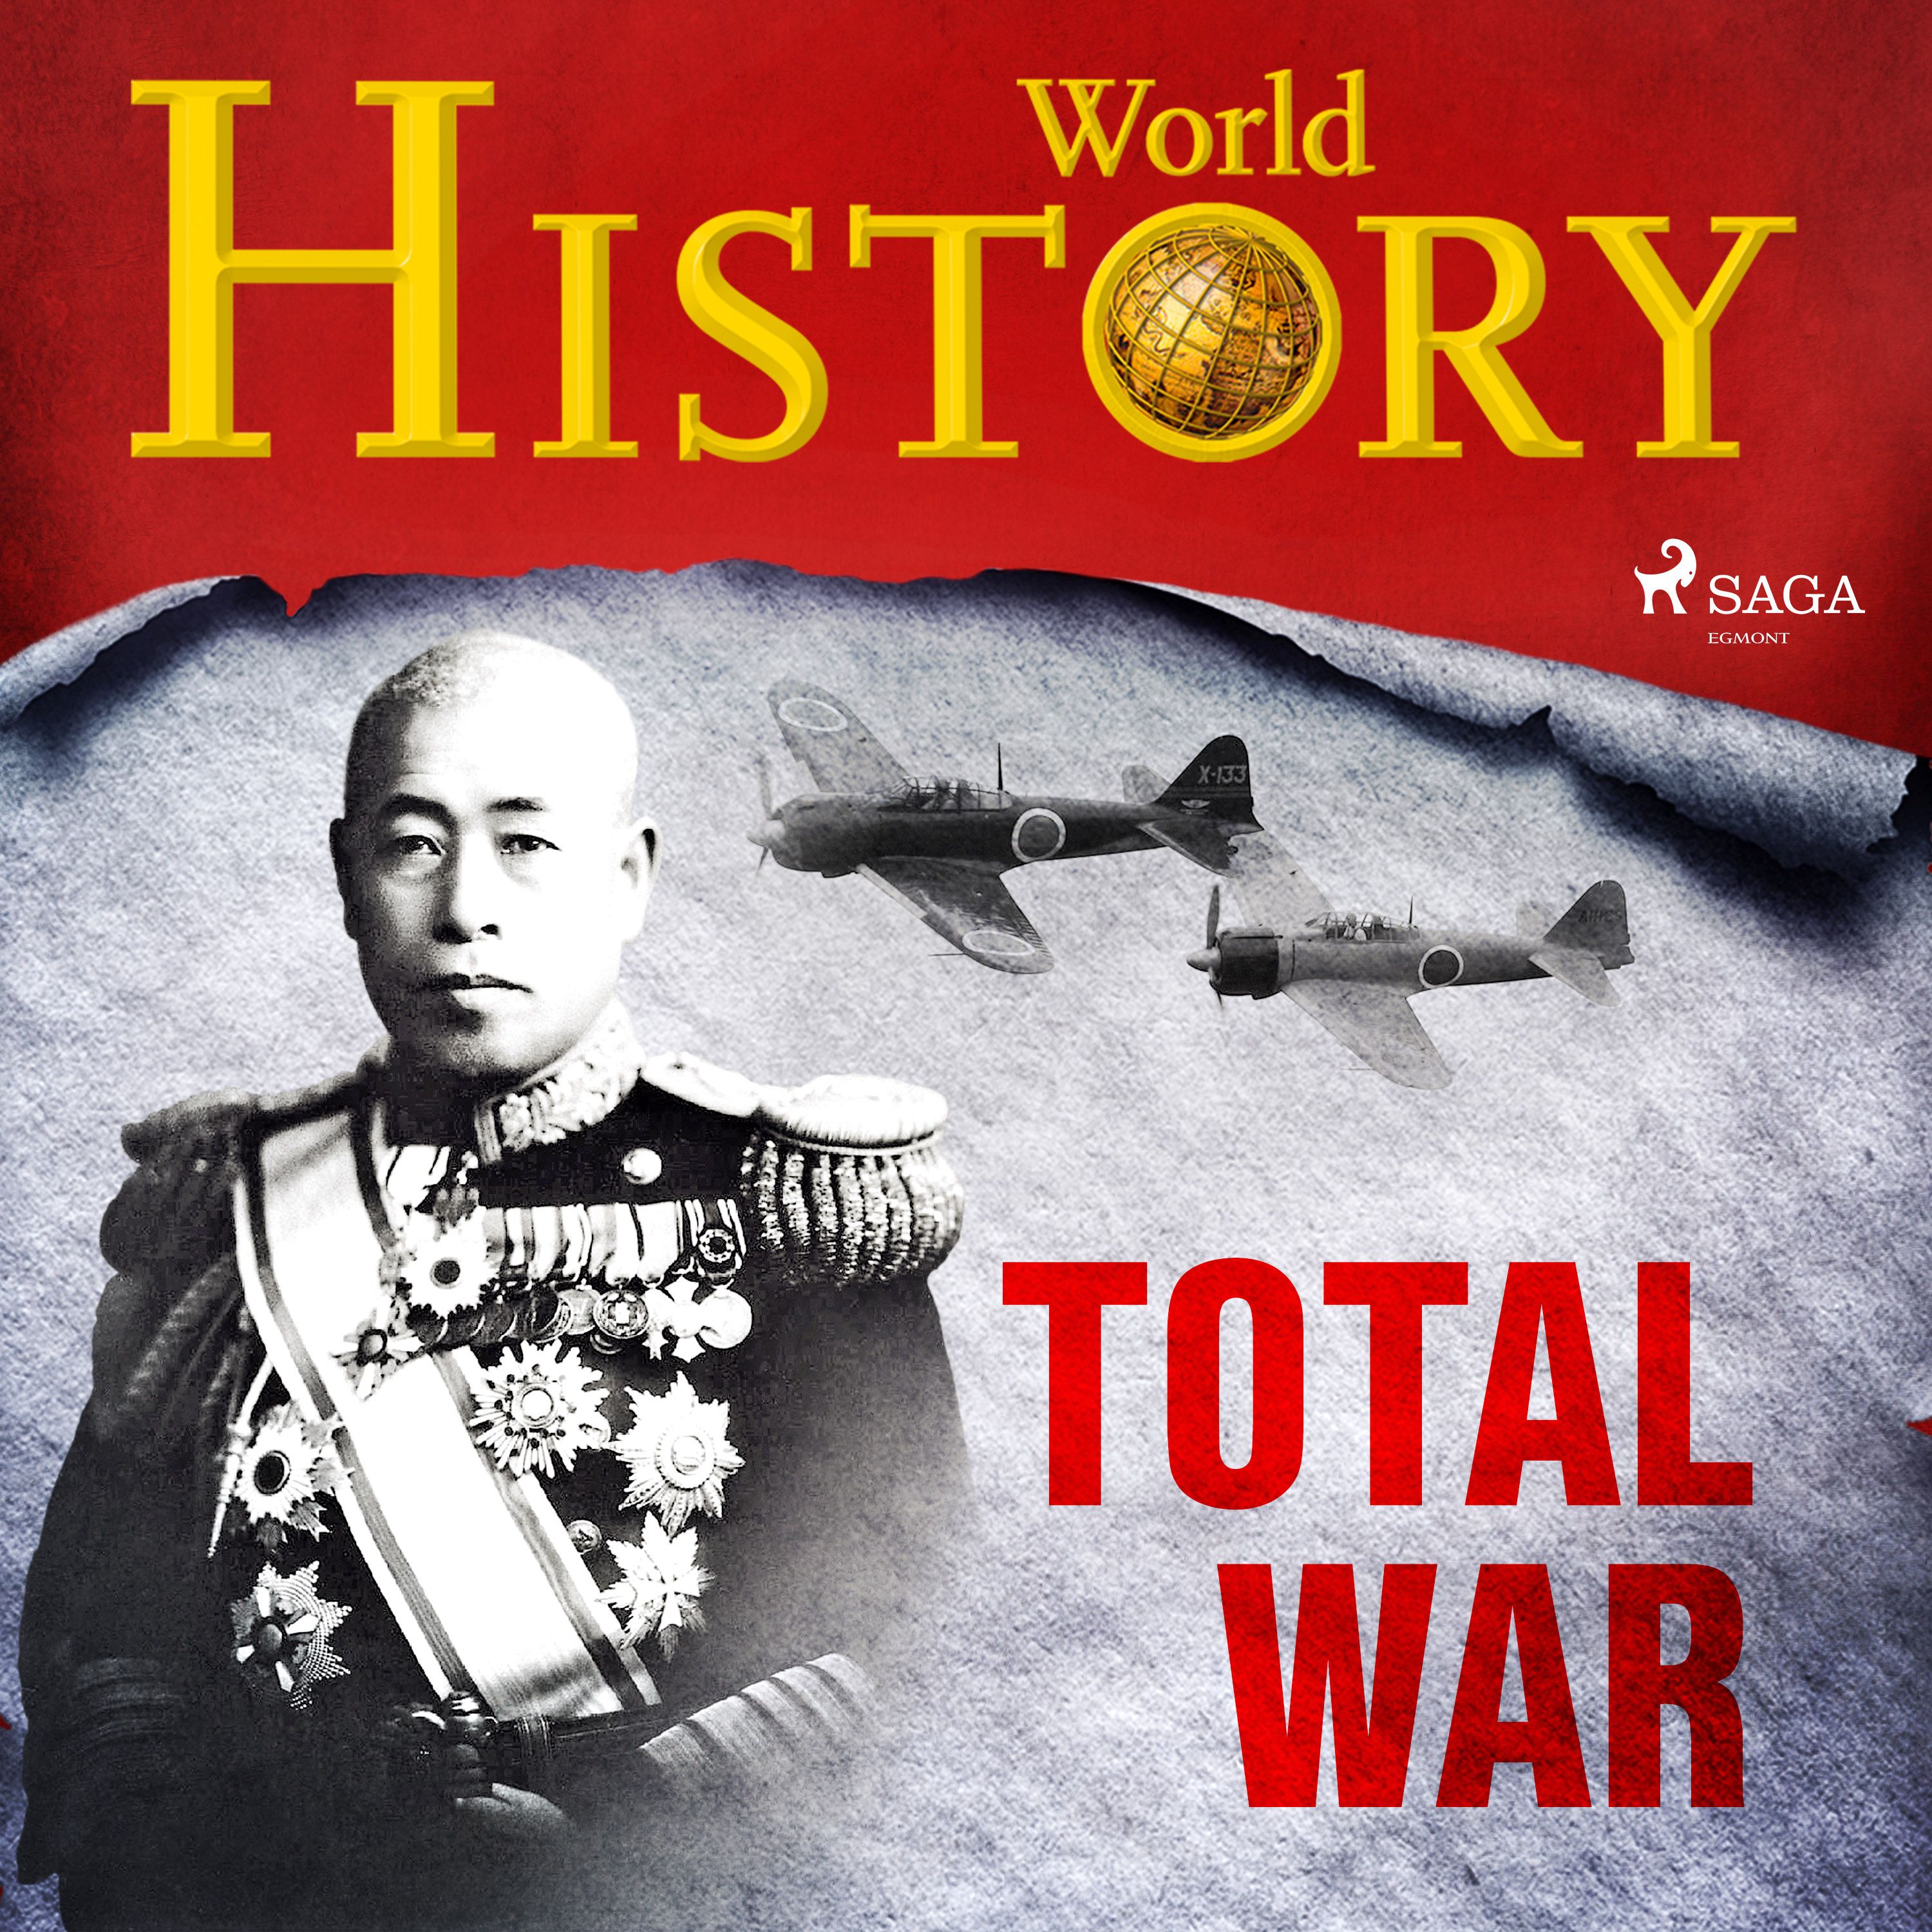 Total War, ljudbok av World History